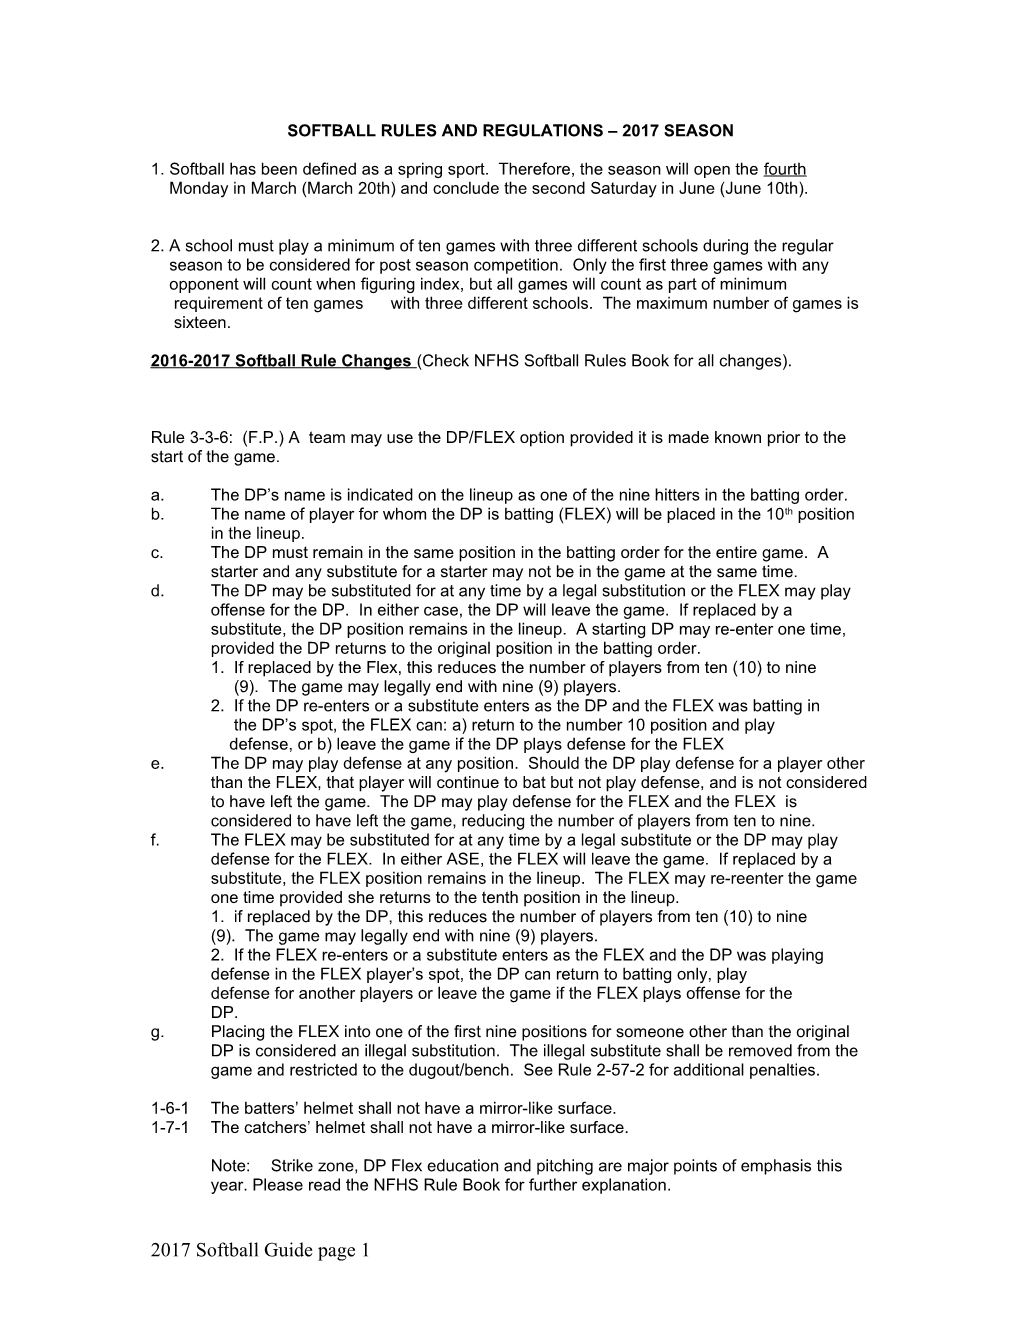 Softball Rules and Regulations 2003 Season